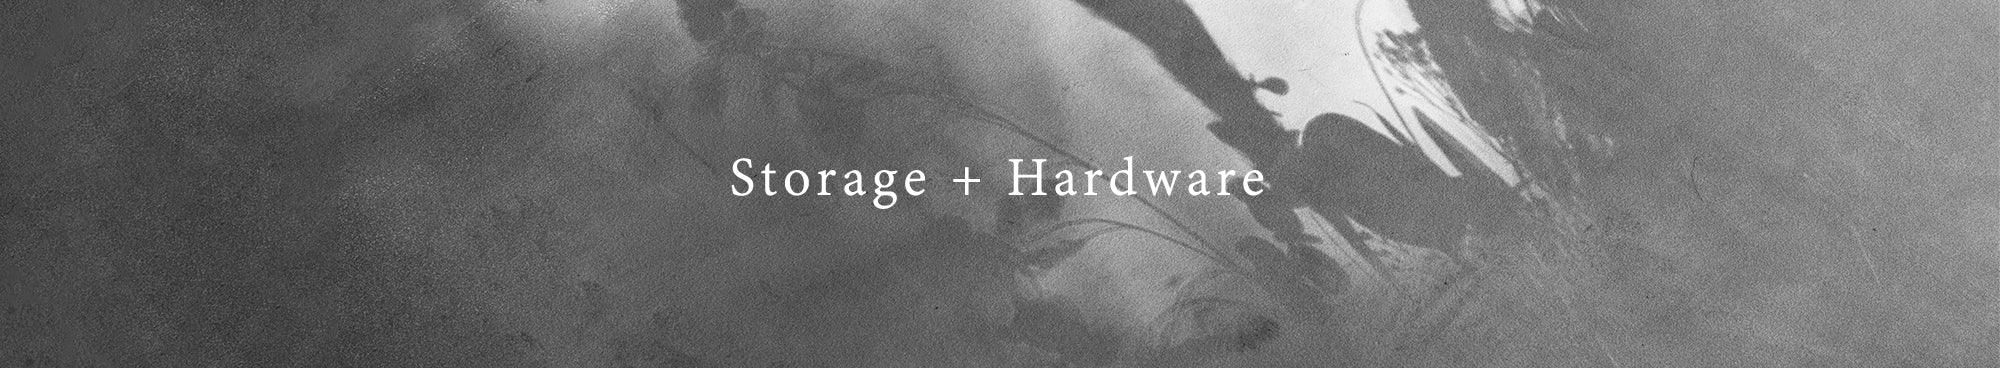 Storage + Hardware